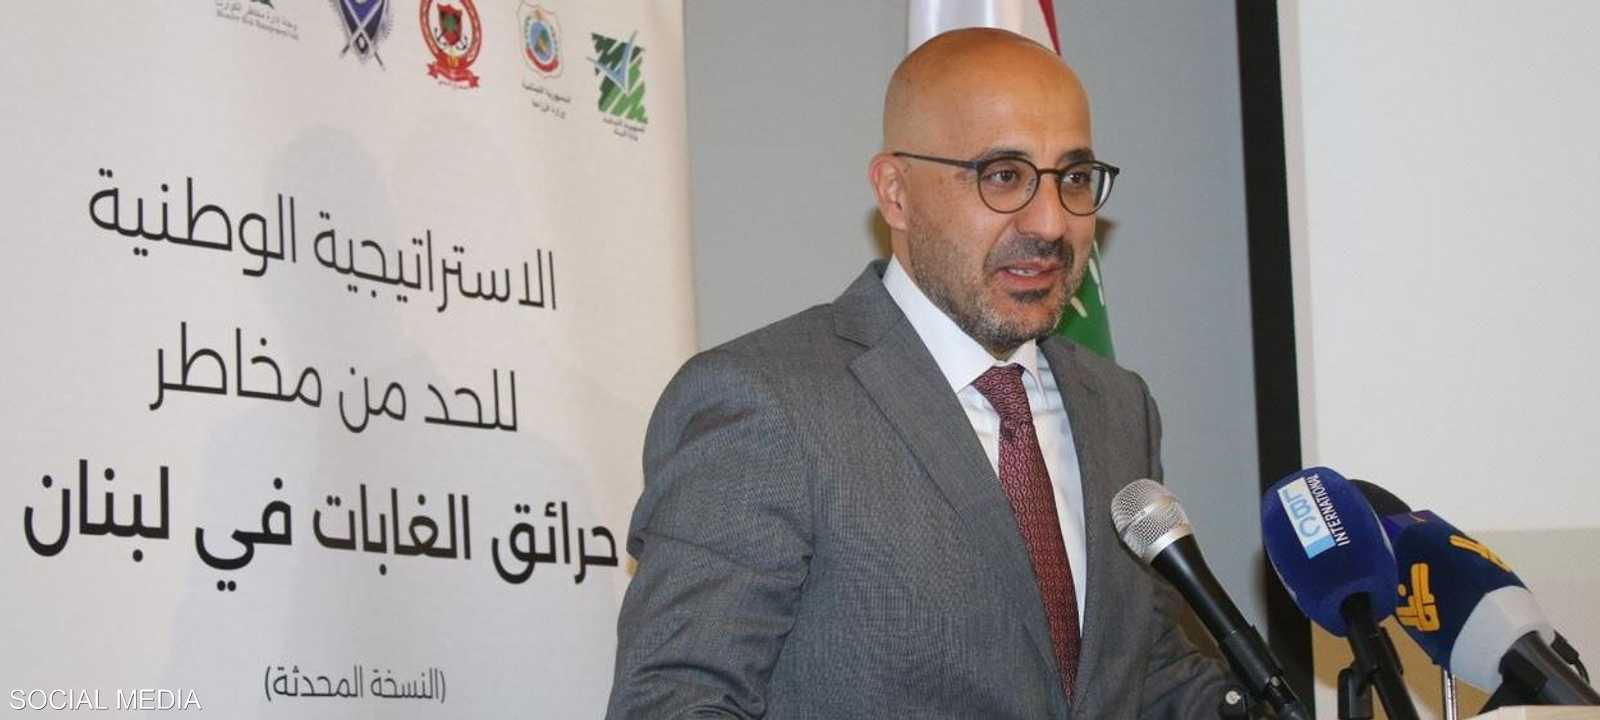 وزير البيئة اللبناني يطلق استراتيجية للحد من حرائق الغابات